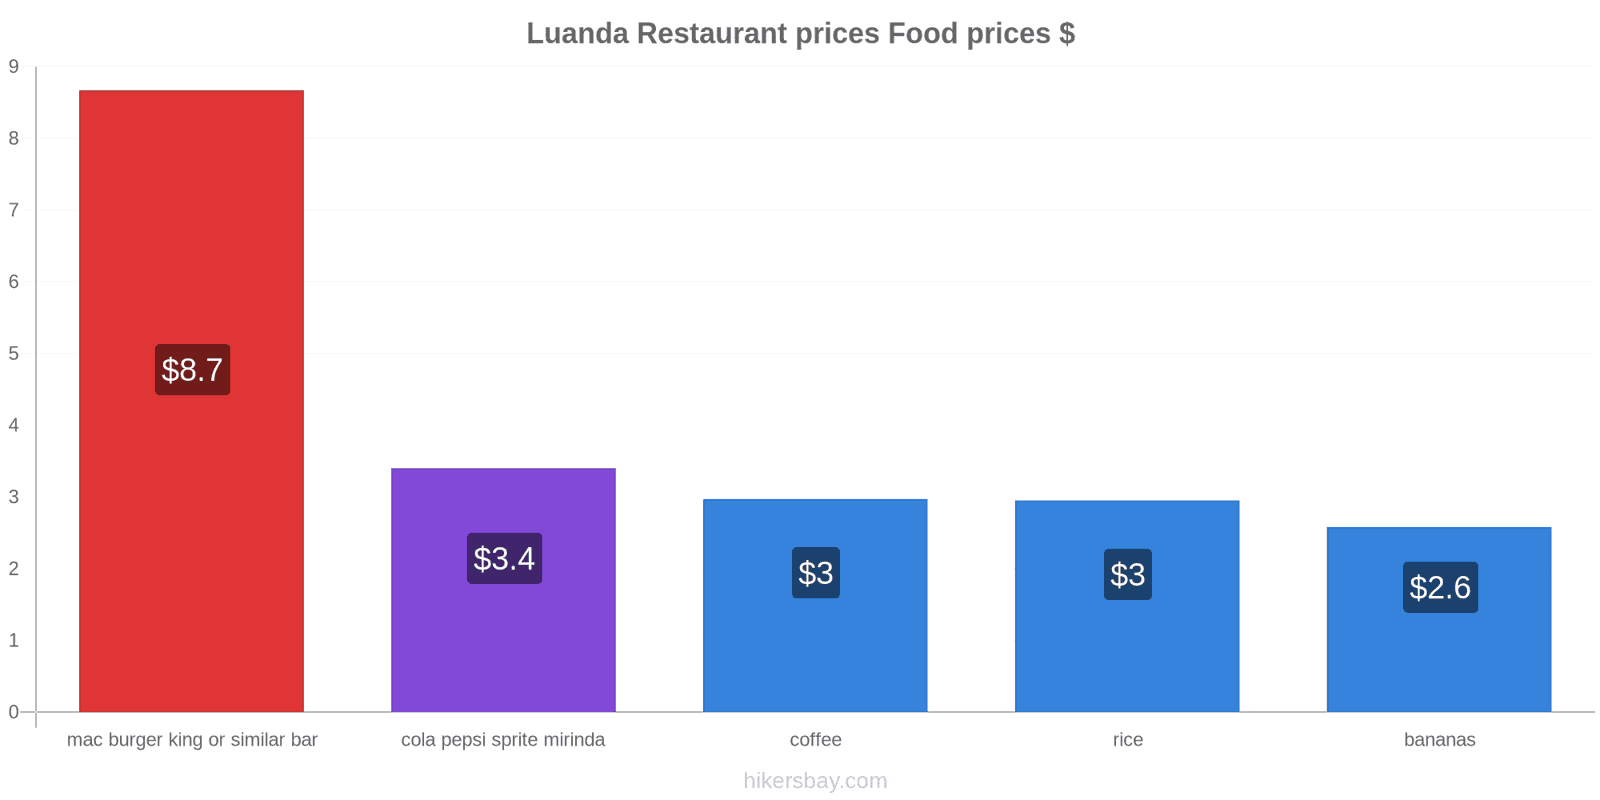 Luanda price changes hikersbay.com